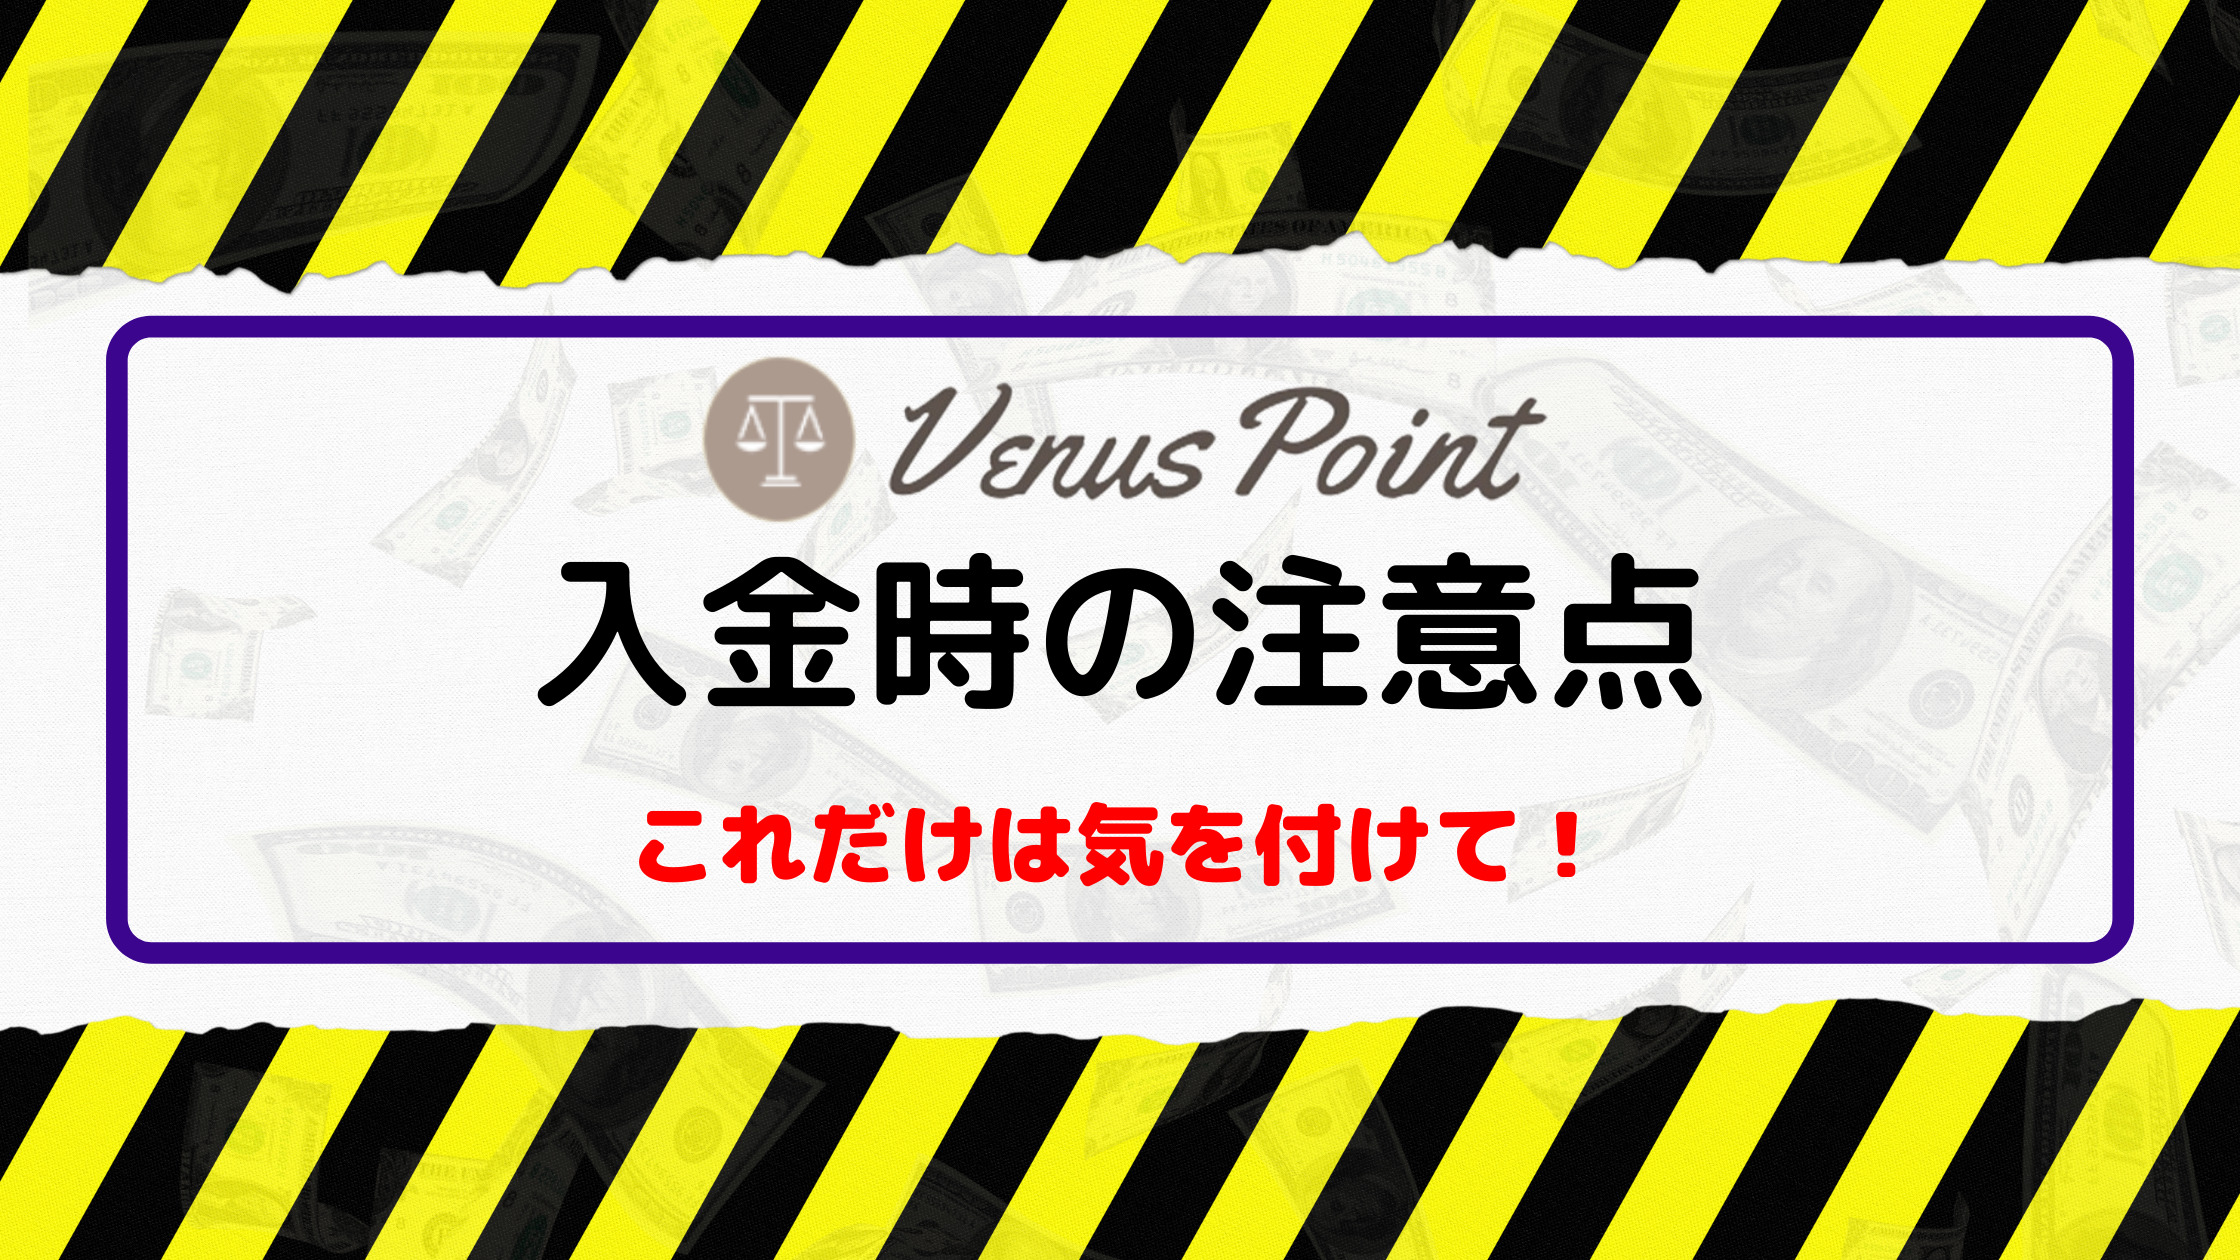 【カスモ（Casumo）】ヴィーナスポイント（Venus Point）入出金｜限度額や注意点を徹底解説！